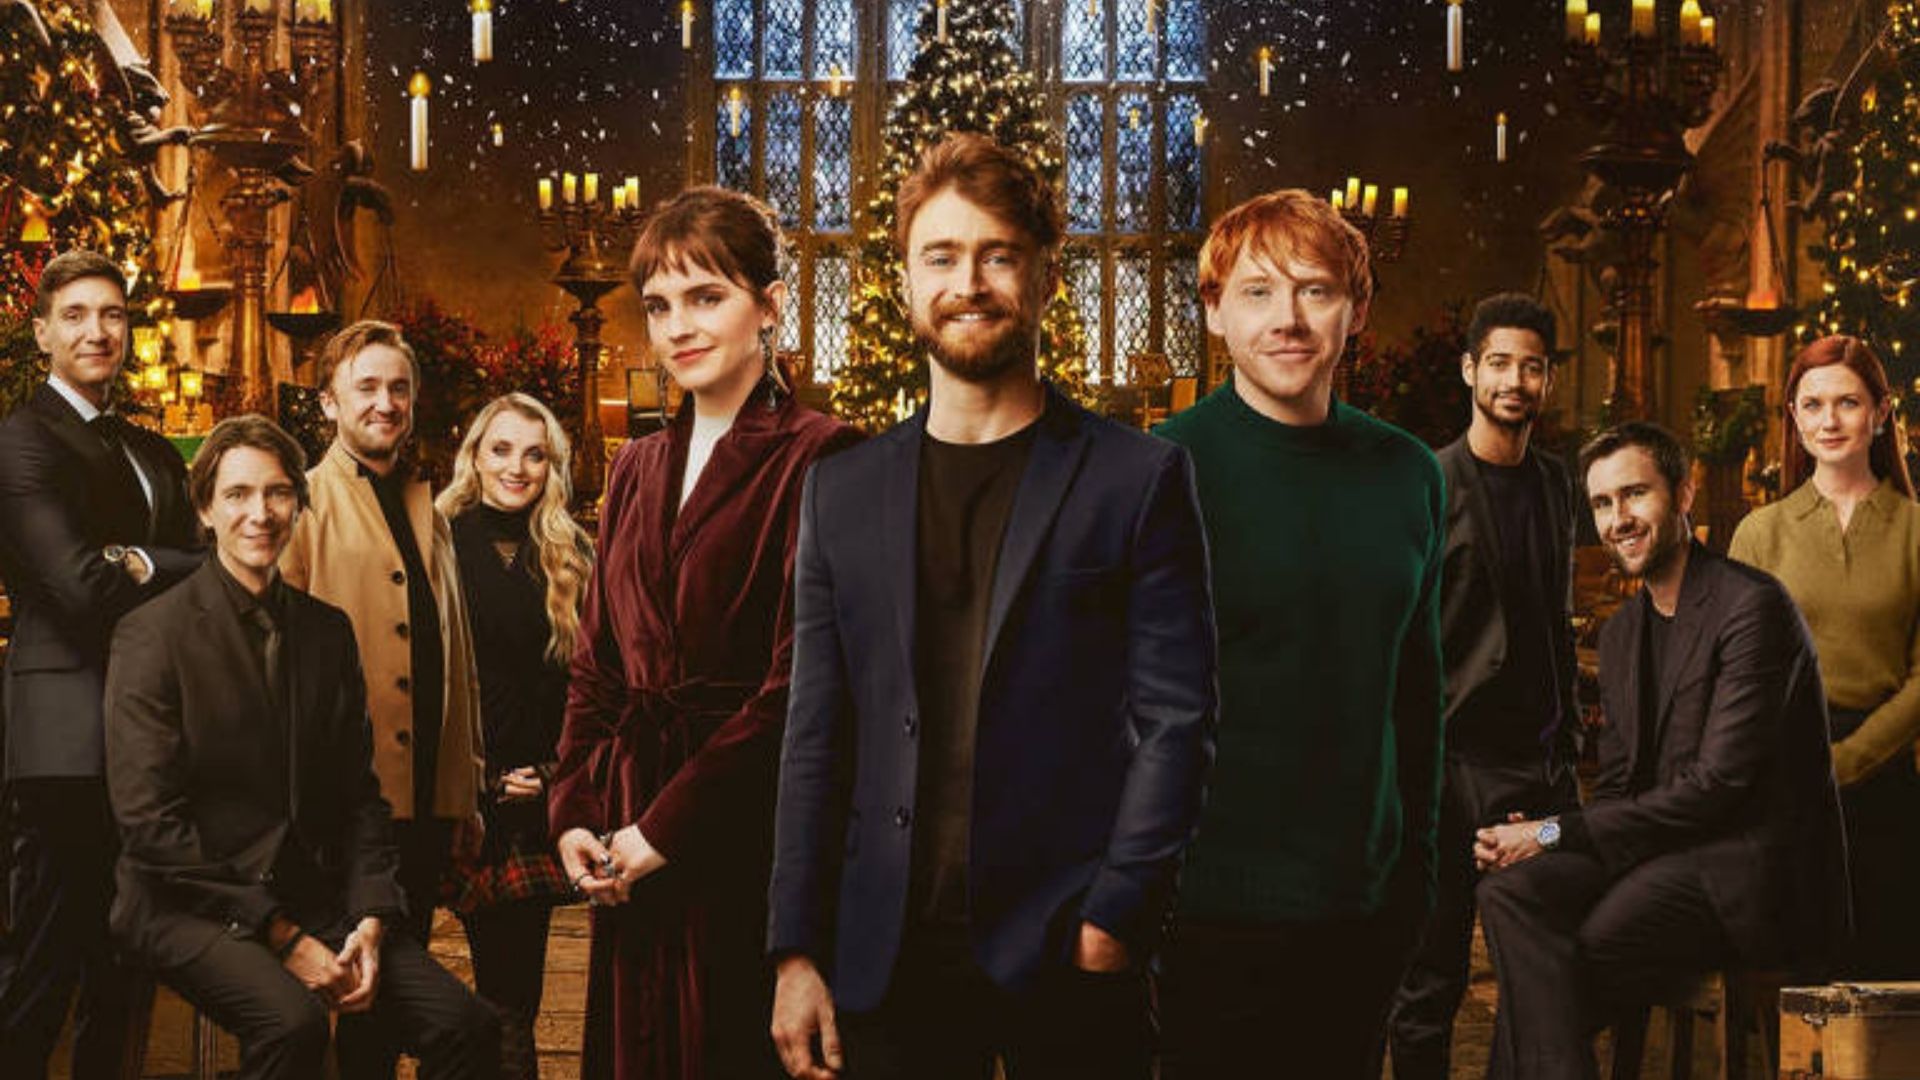 Elenco de "Harry Potter" reunido em especial da franquia do HBO Max (Foto: Reprodução/HBO Max)